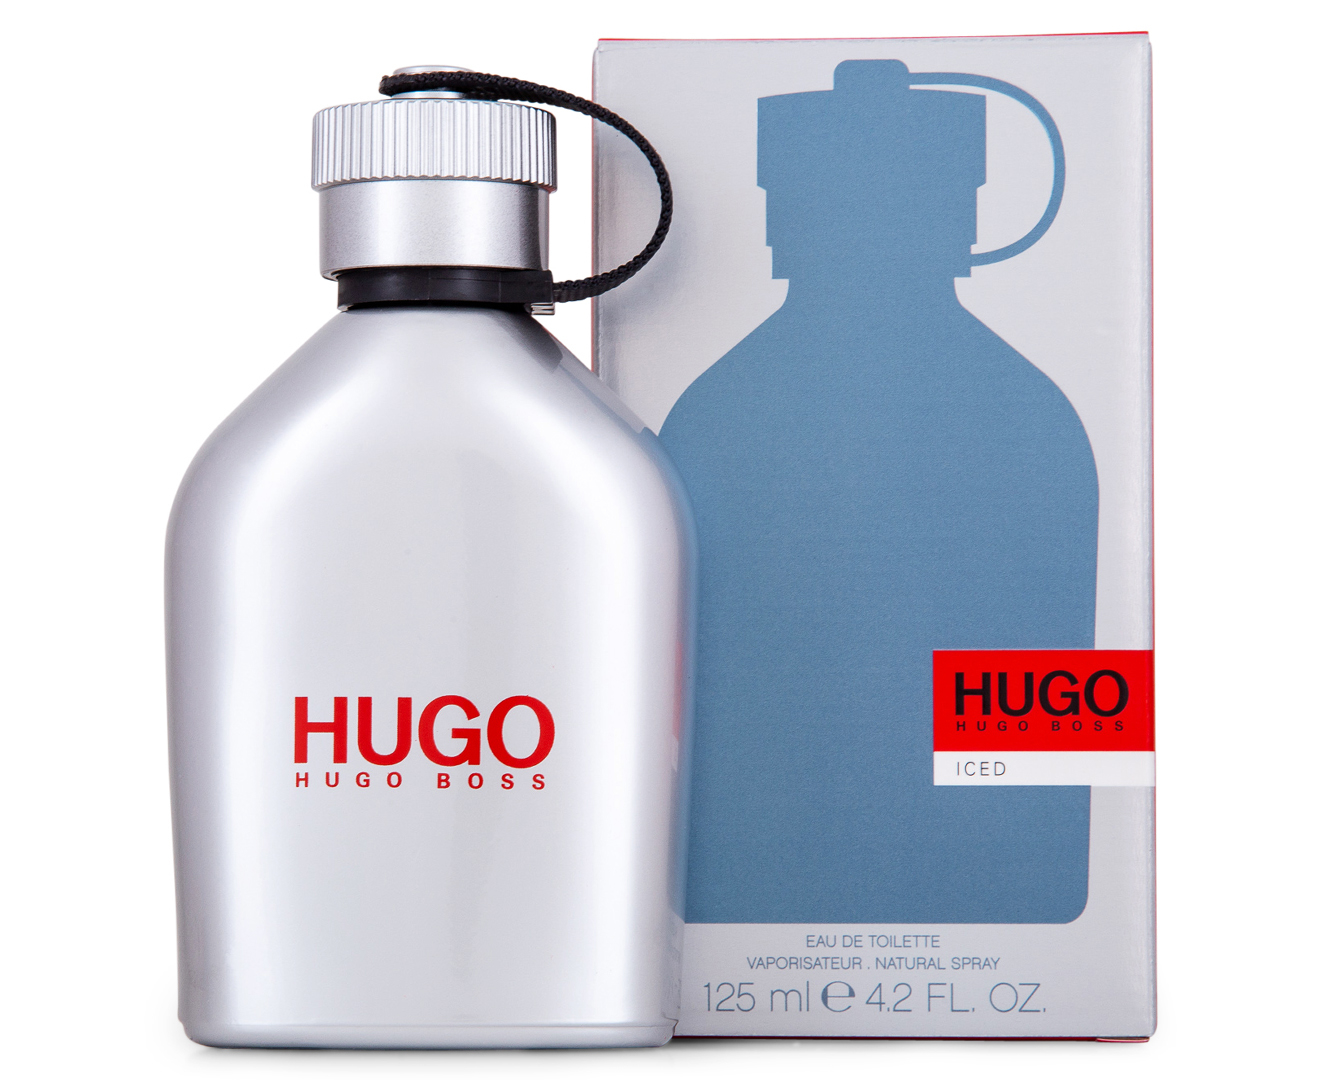 Hugo Boss Iced For Men EDT Perfume 125mL | Catch.com.au